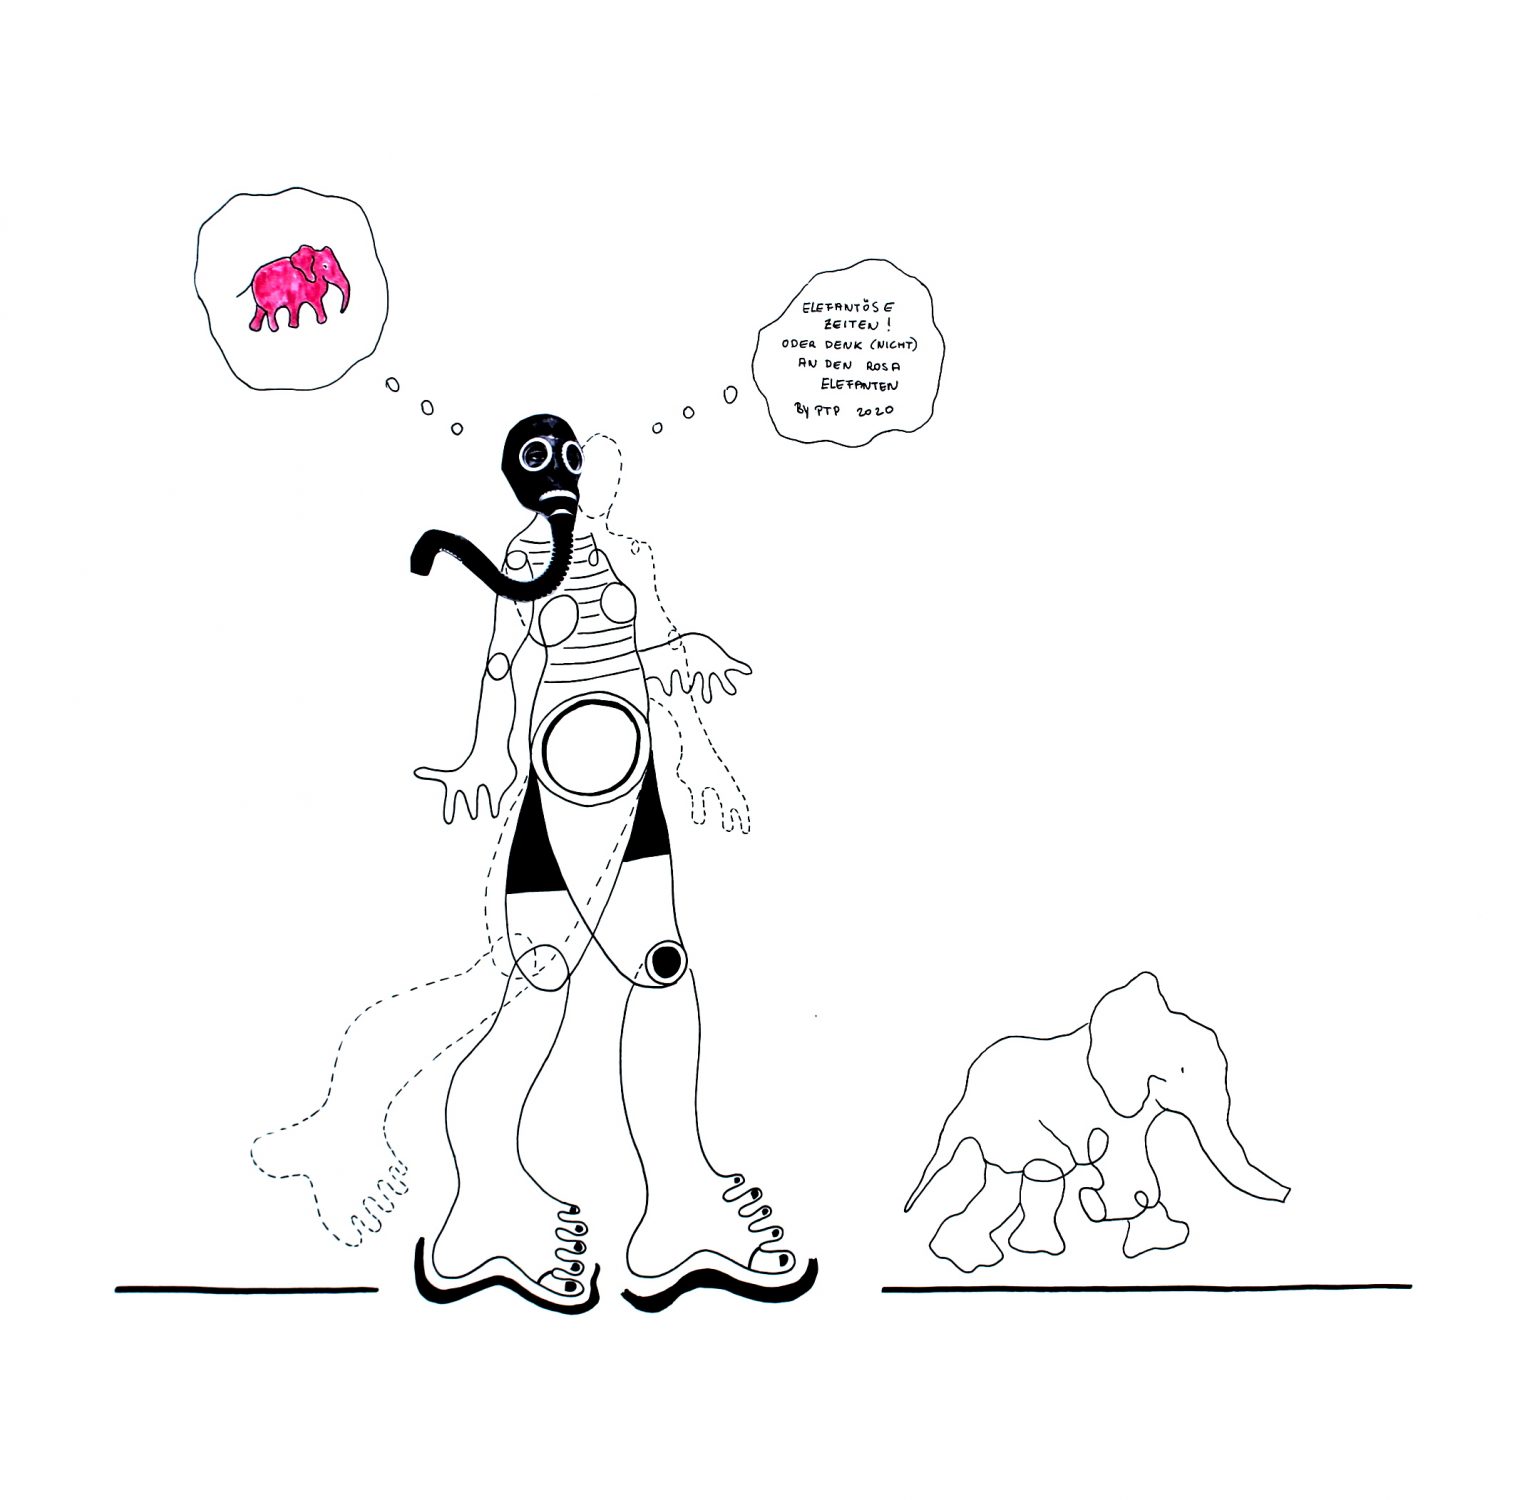 Elefantöse Zeiten, oder denk (nicht) an den rosa Elefanten, Collage, Tinte auf Papier, 2020,50x50